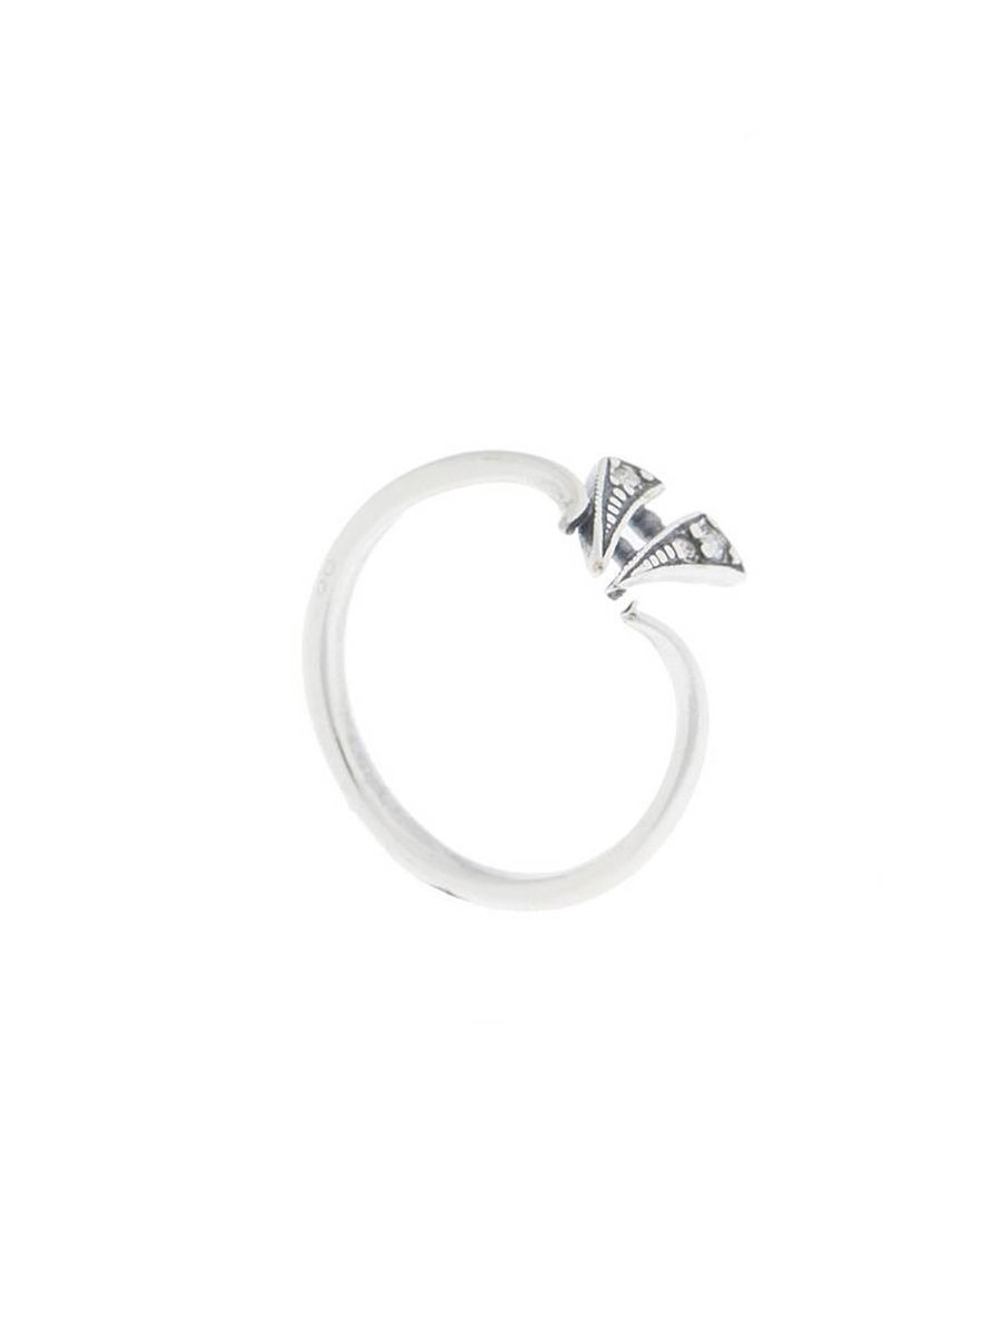 "Парус" кольцо в серебряном покрытии из коллекции "Фантазия" от Jenavi